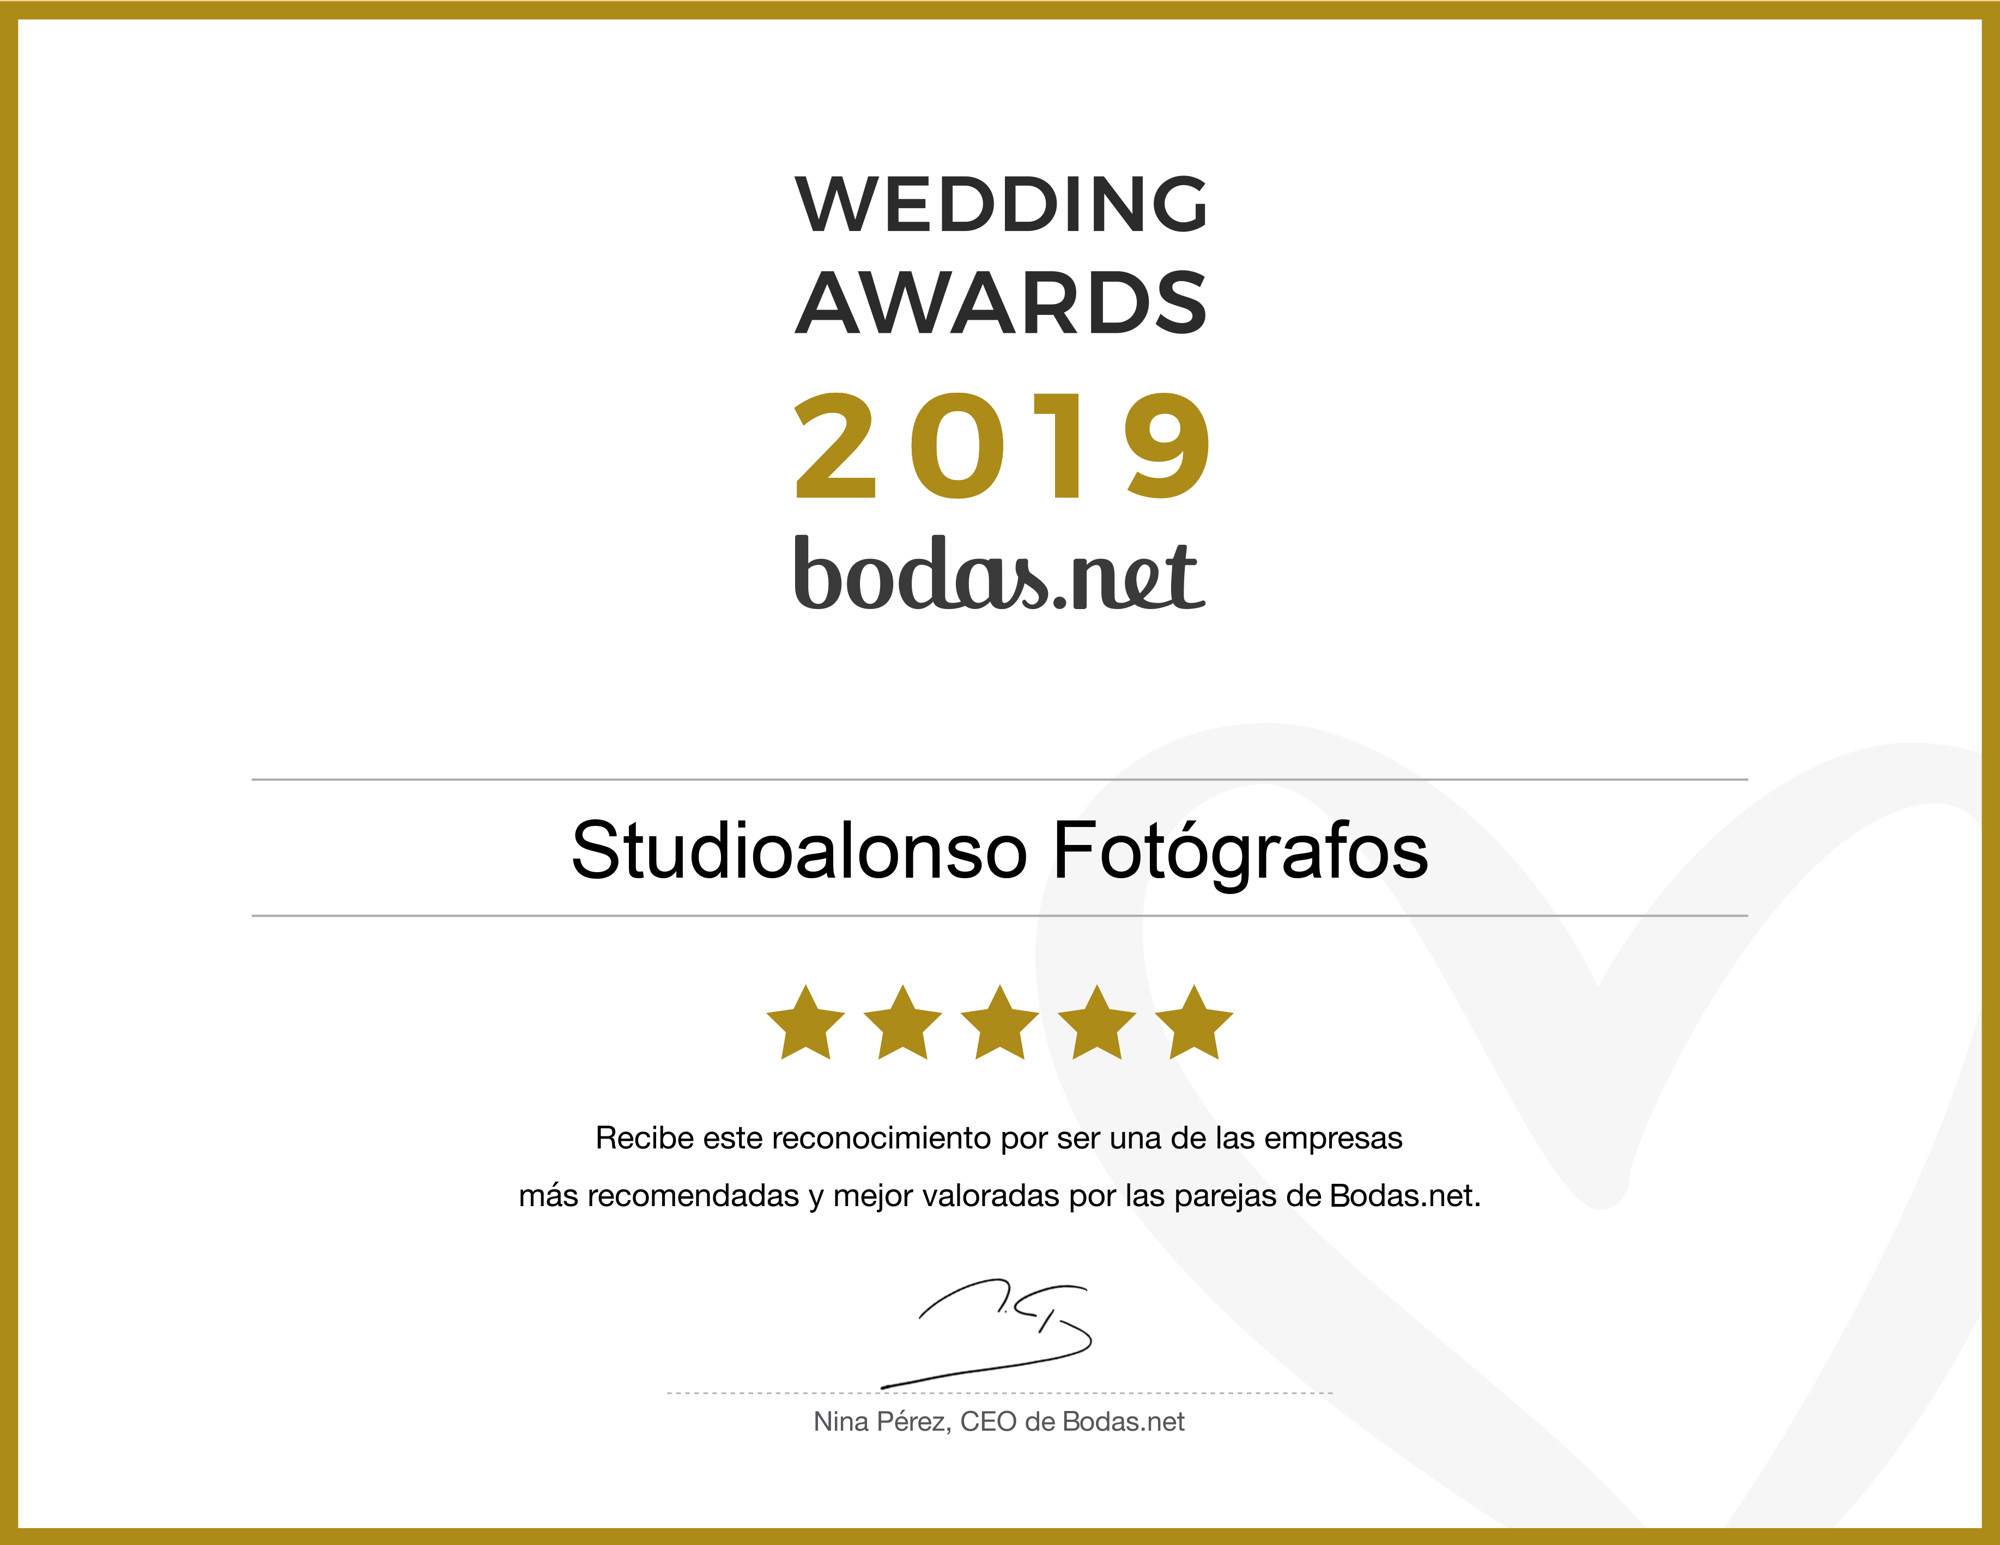 opiniones recomendaciones mejores fotografos boda madrid